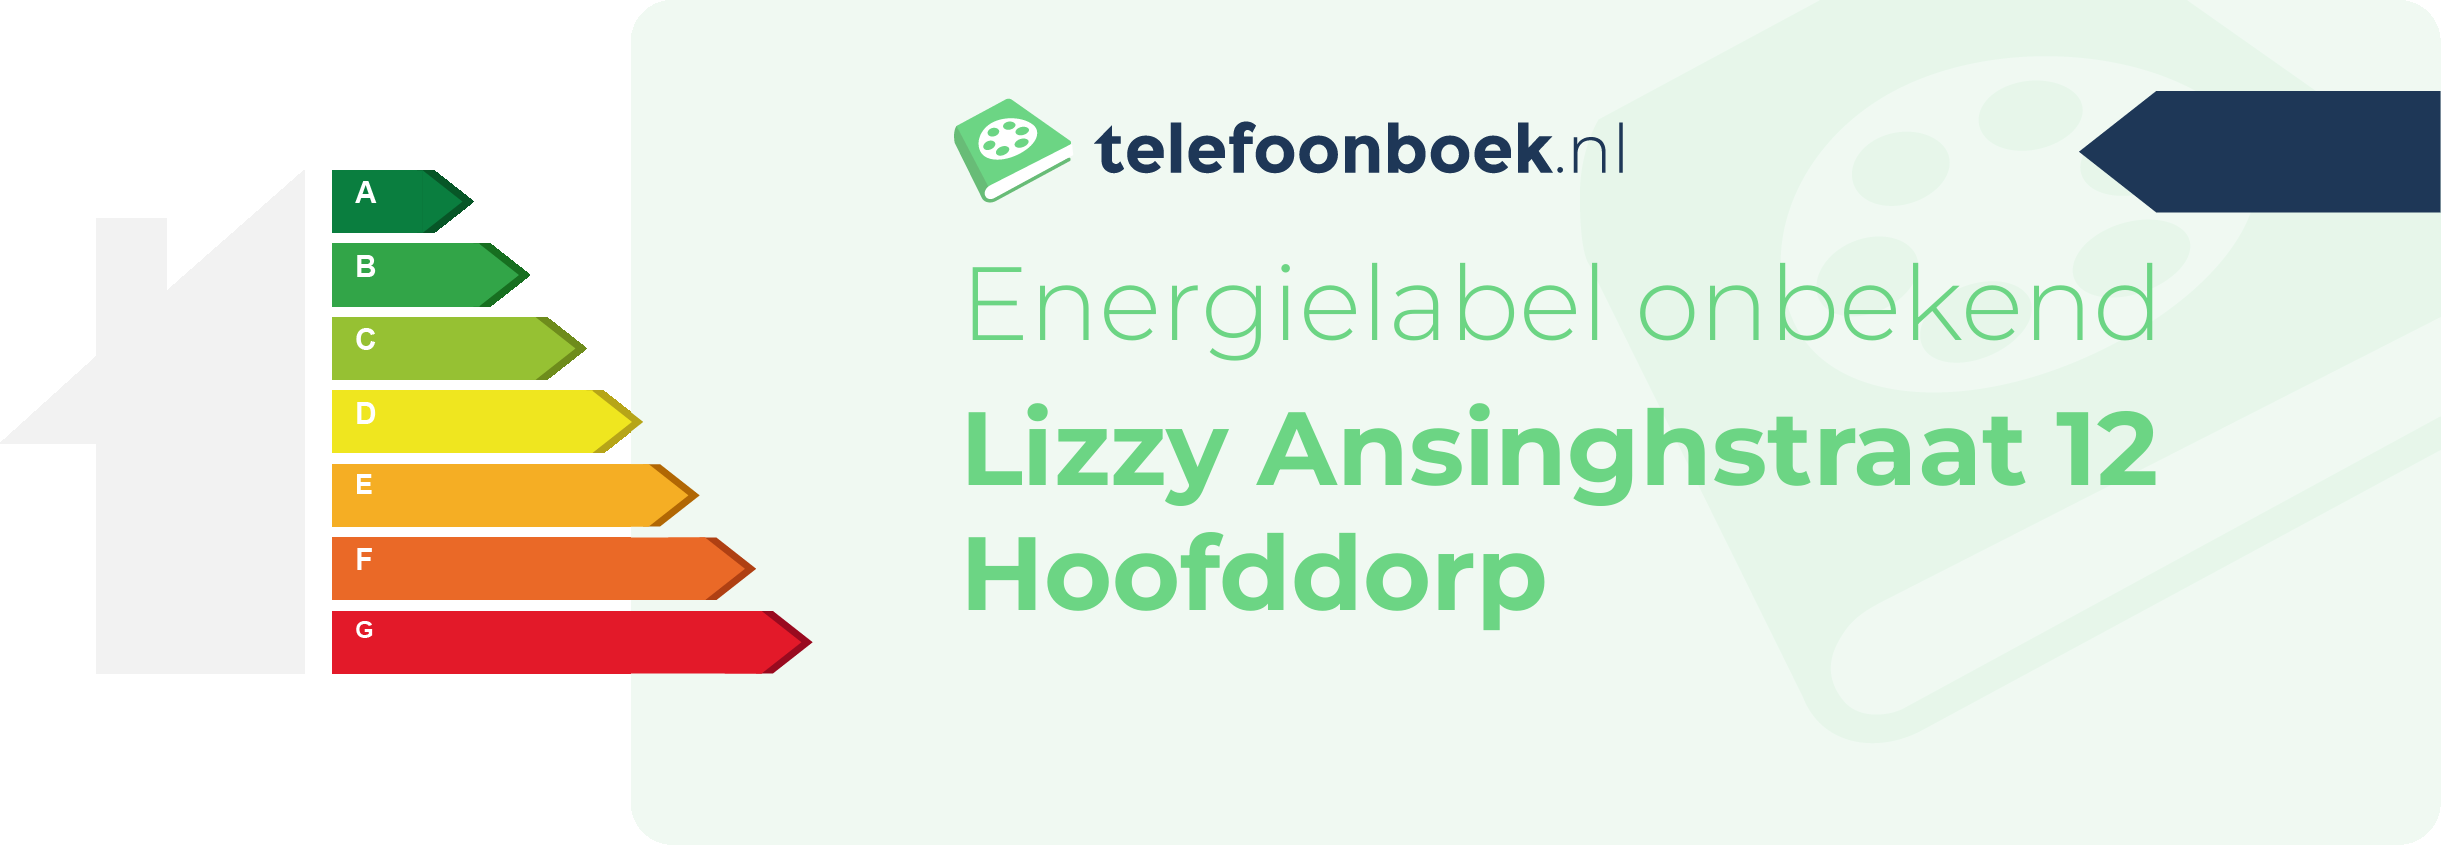 Energielabel Lizzy Ansinghstraat 12 Hoofddorp